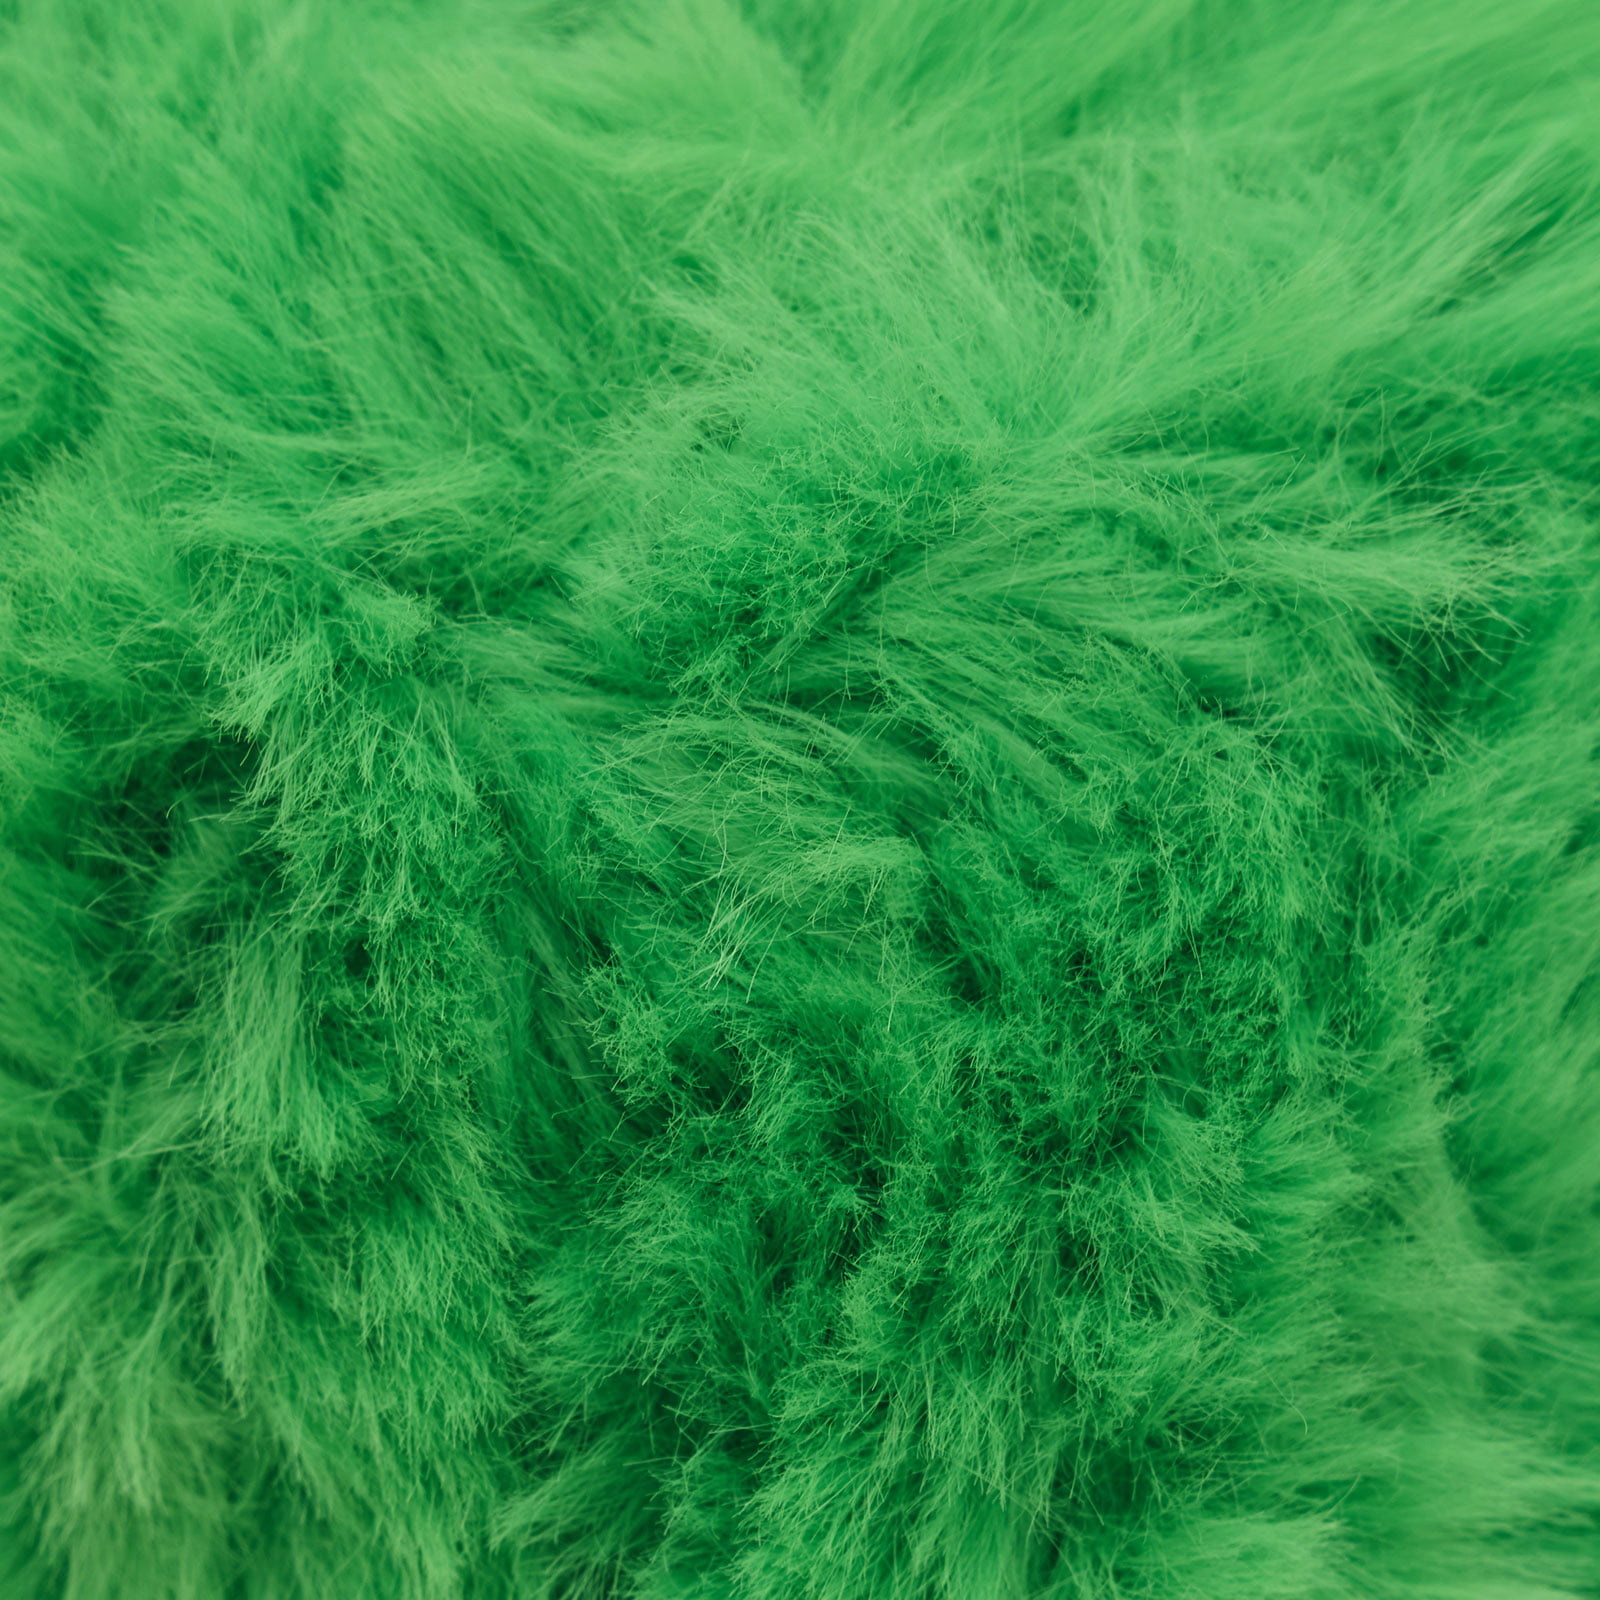 NICEEC 2 Skeins Super Soft Fur Yarn Chunky Fluffy Faux Fur Yarn Eyelash Yarn for Crochet Knit-Total Length 232m(235yds,50g2)-Peach Pink